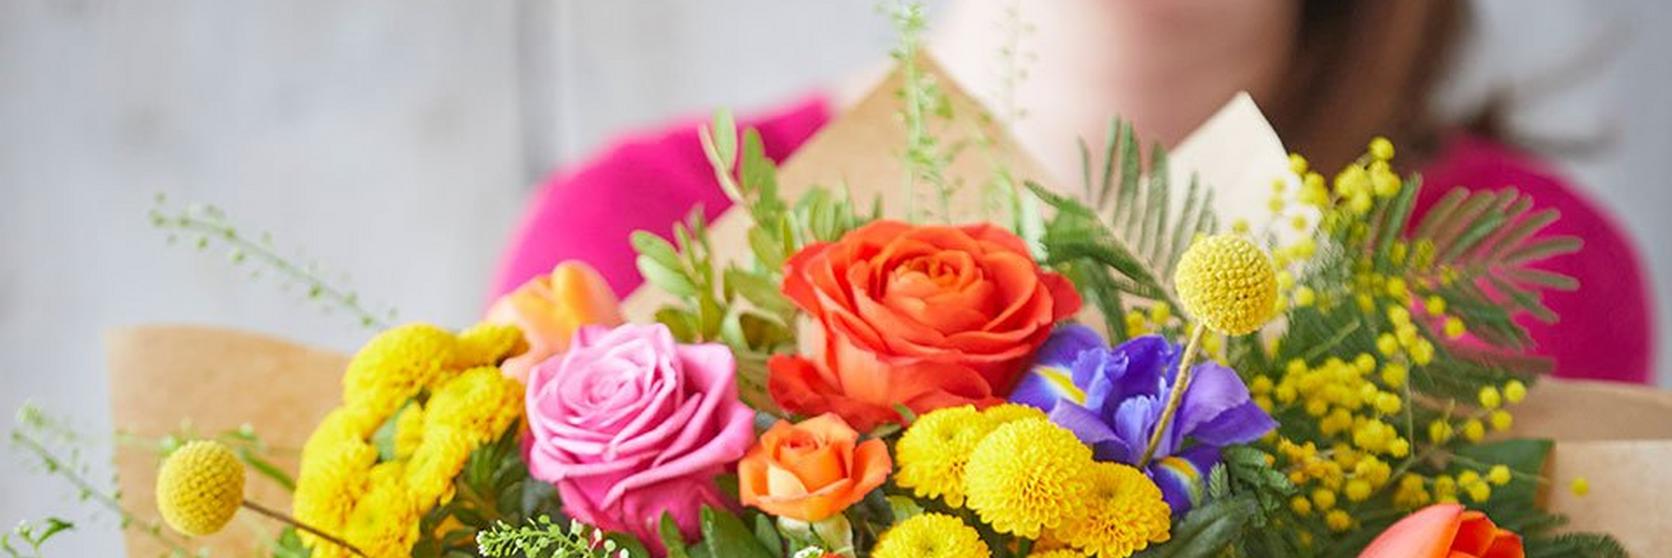 Interflora-bright-bouquet-flowers